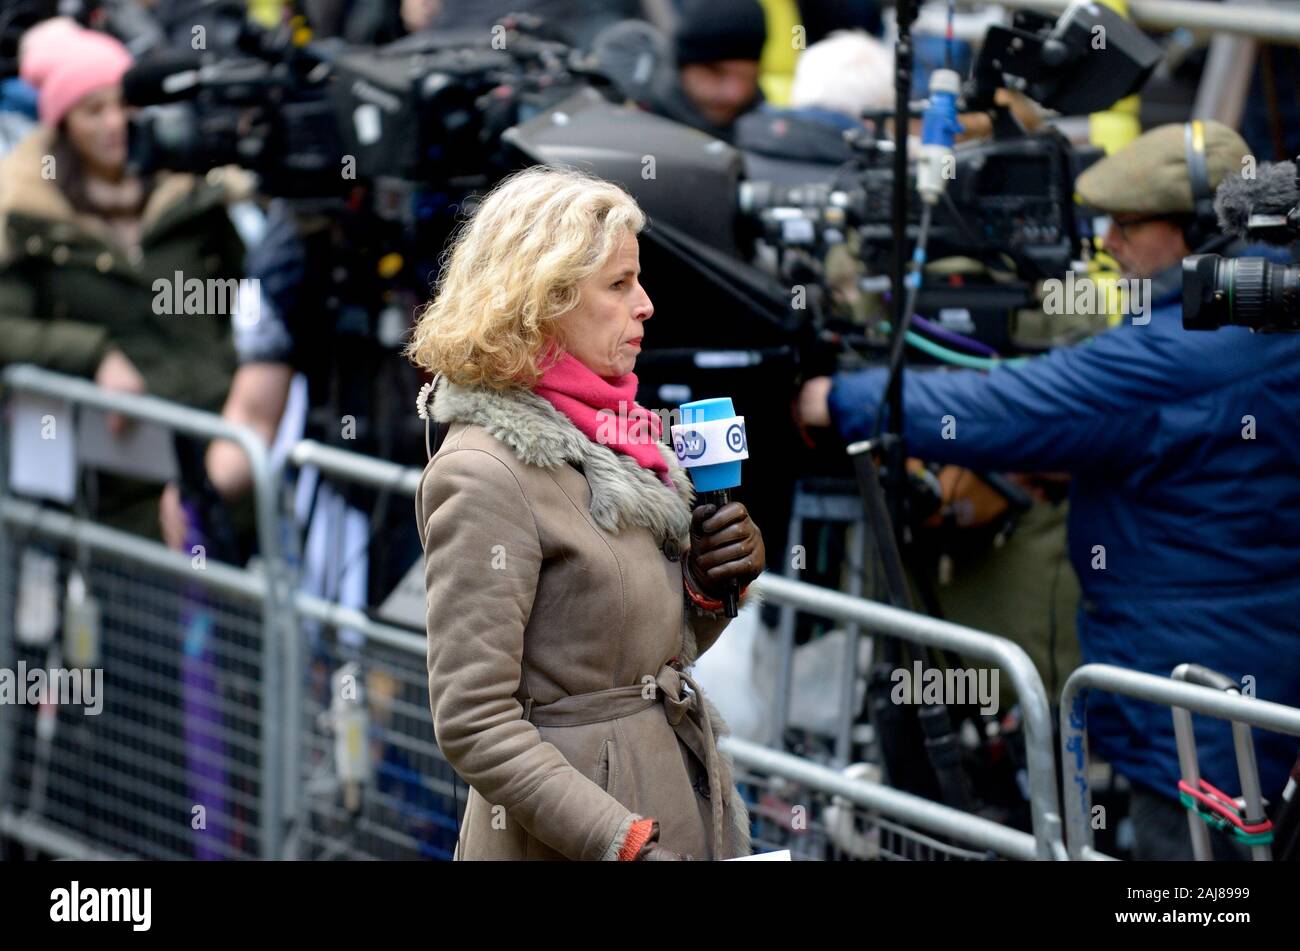 Birgit Maass - Deutsche Welle UK correspondent - reporting from Downing Street, December 2019 Stock Photo